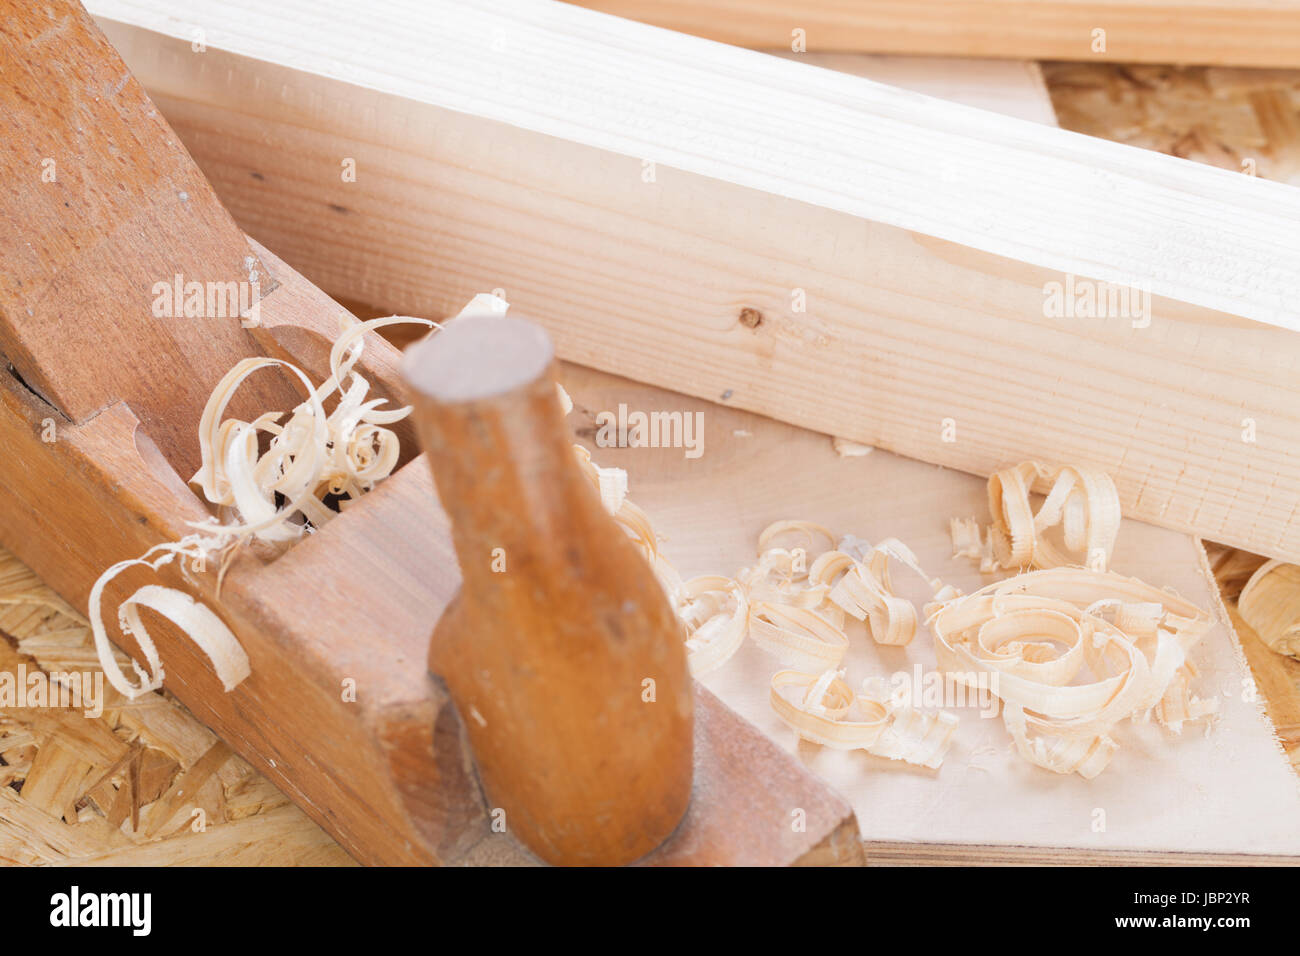 Hobel mit Holz Spänen in einer Schreinerei bei der Holzbearbeitung Nahaufnahme en détail Banque D'Images